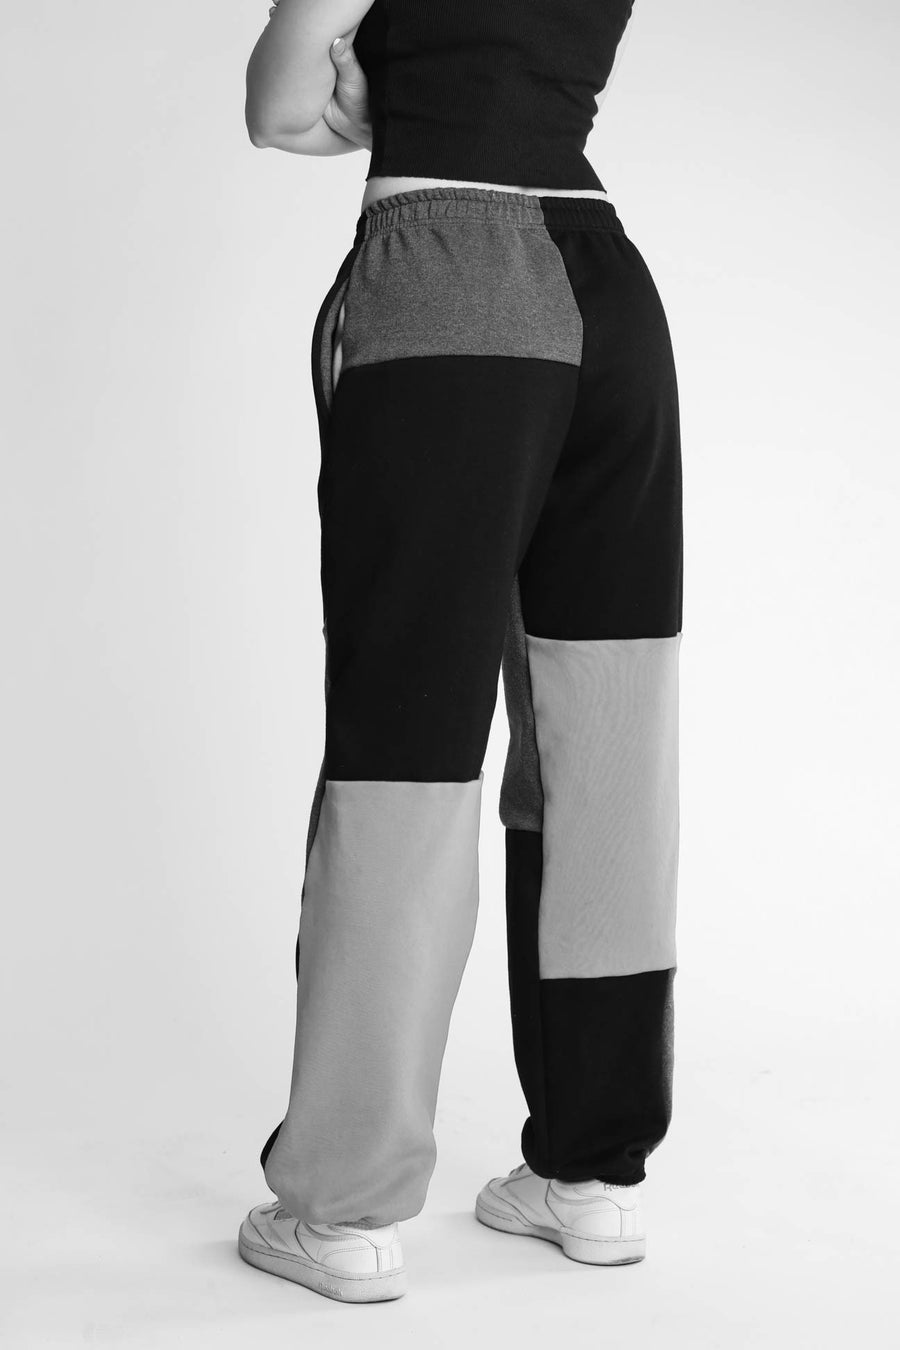 Unisex Patchwork North Face Sweatpants - Women-M, Men-S